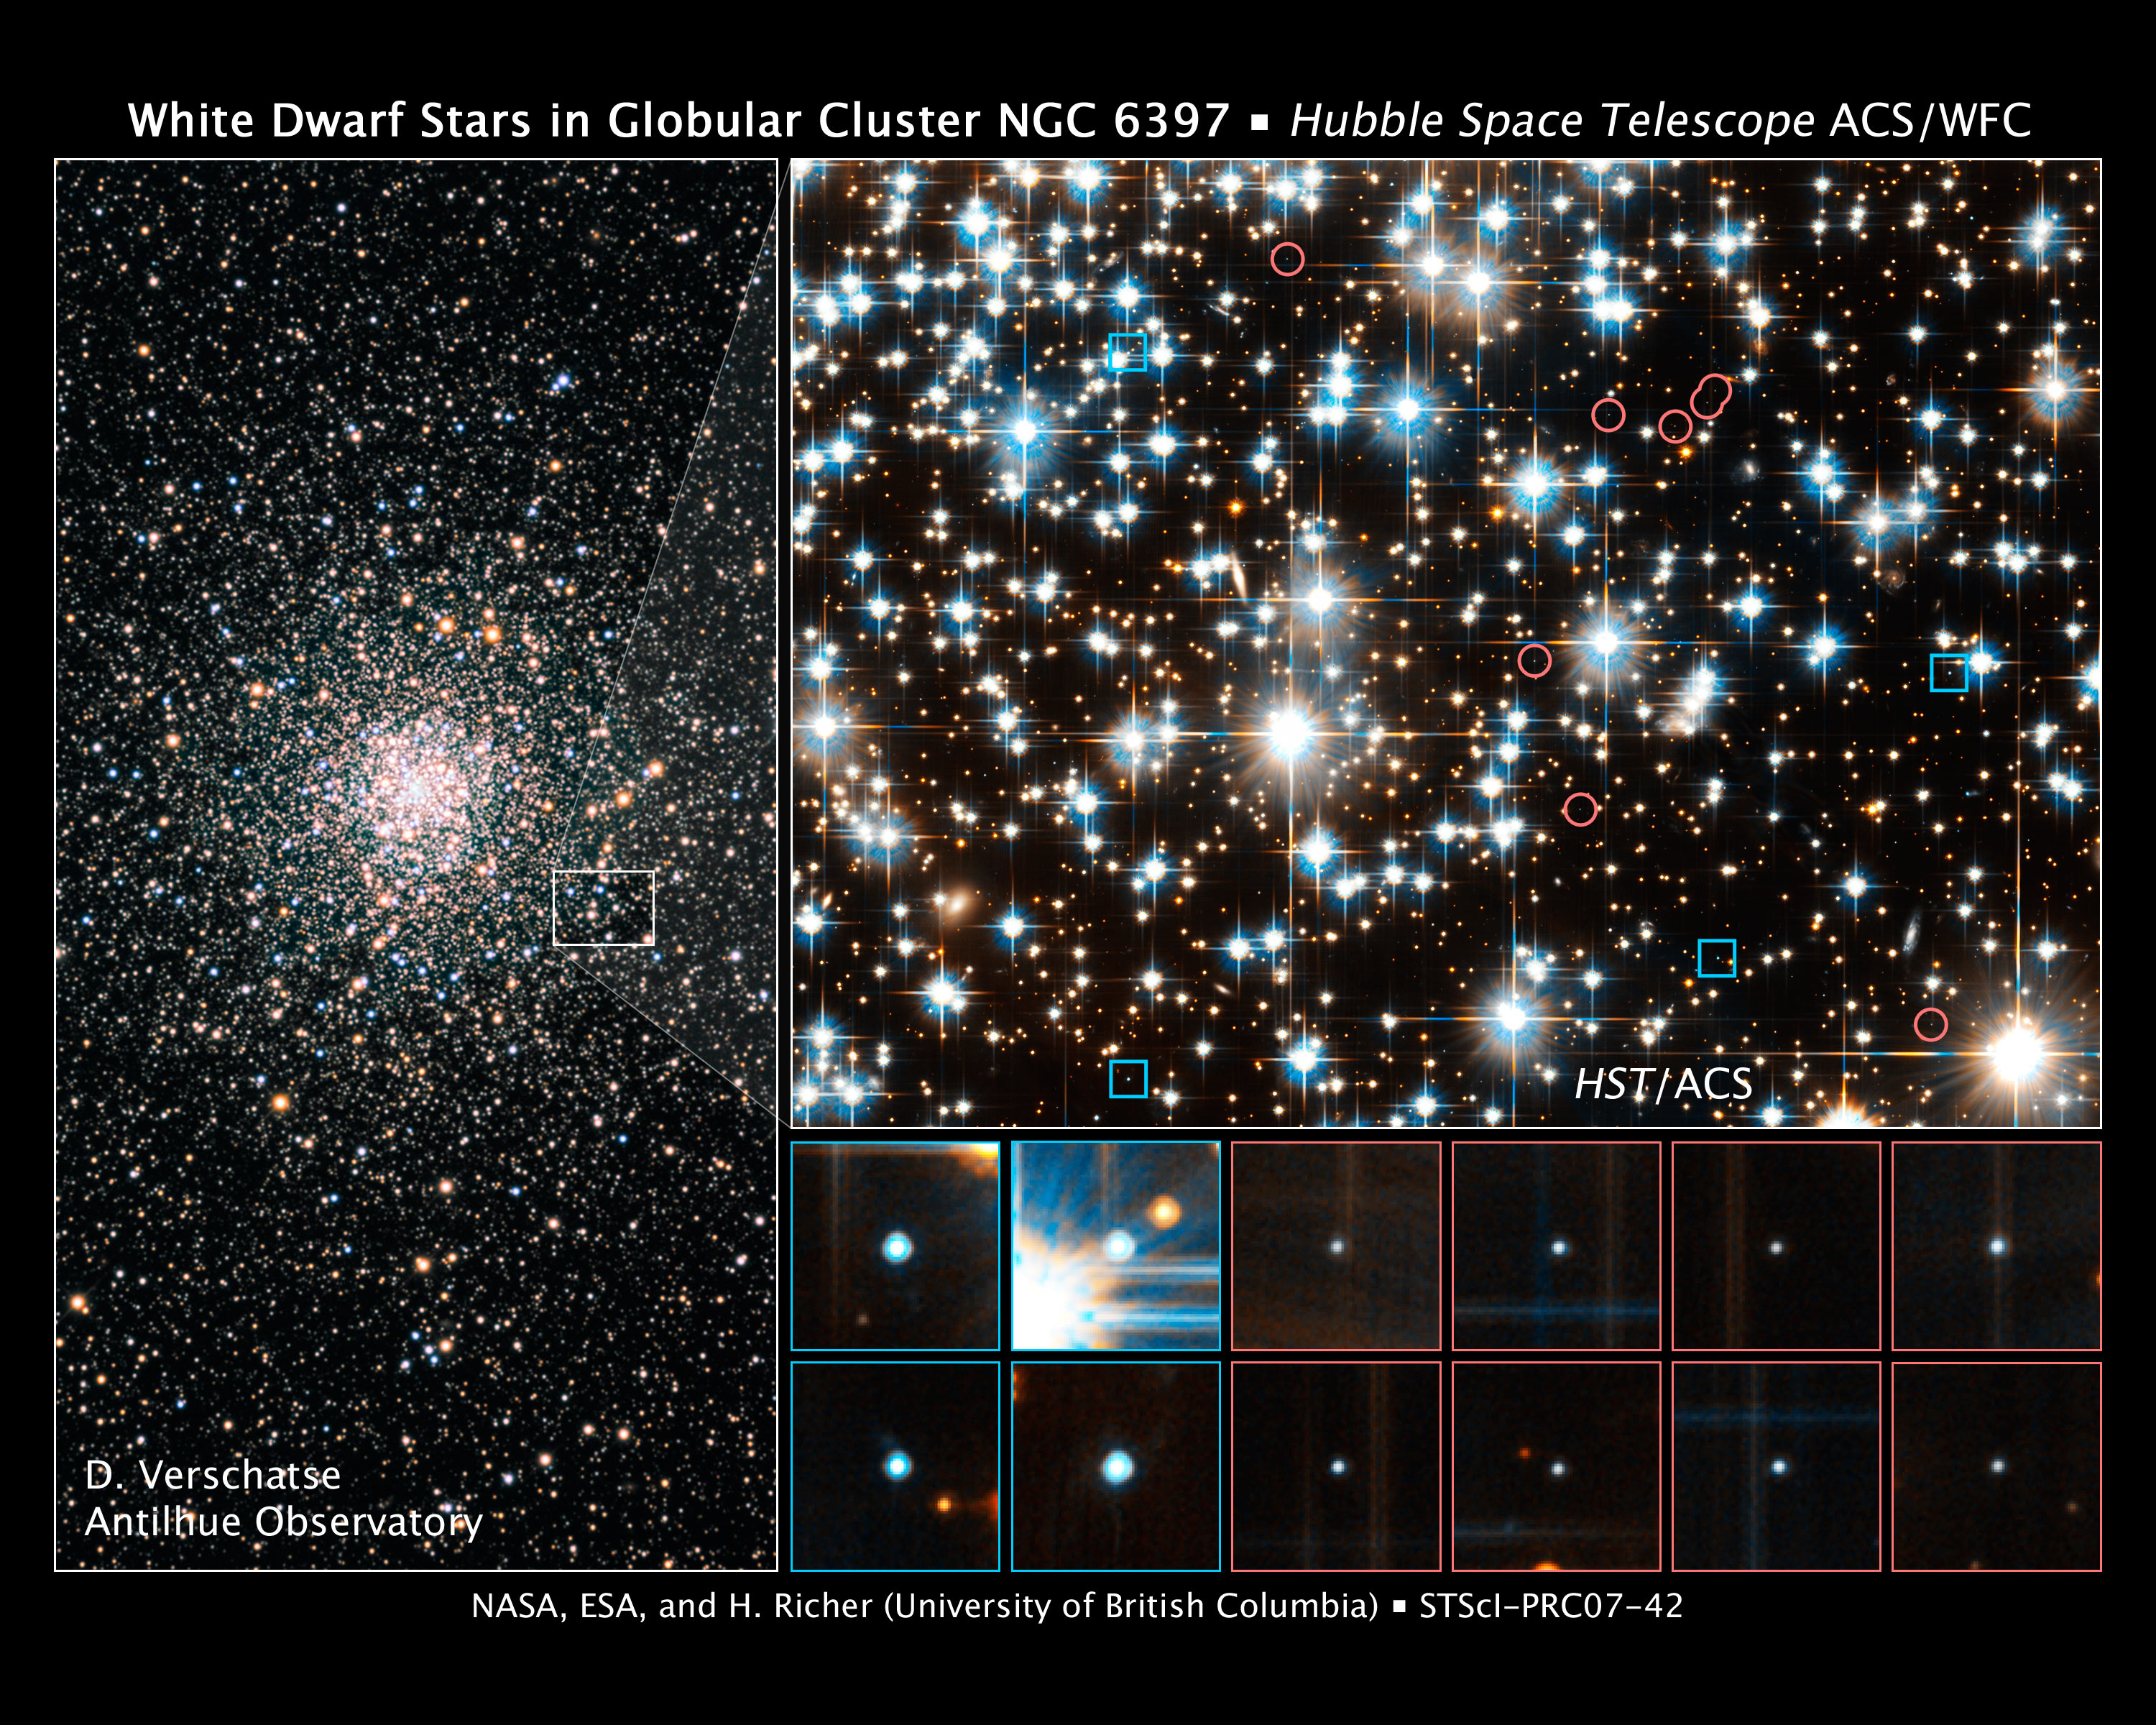 White dwarfs in the globular cluster NGC 6397